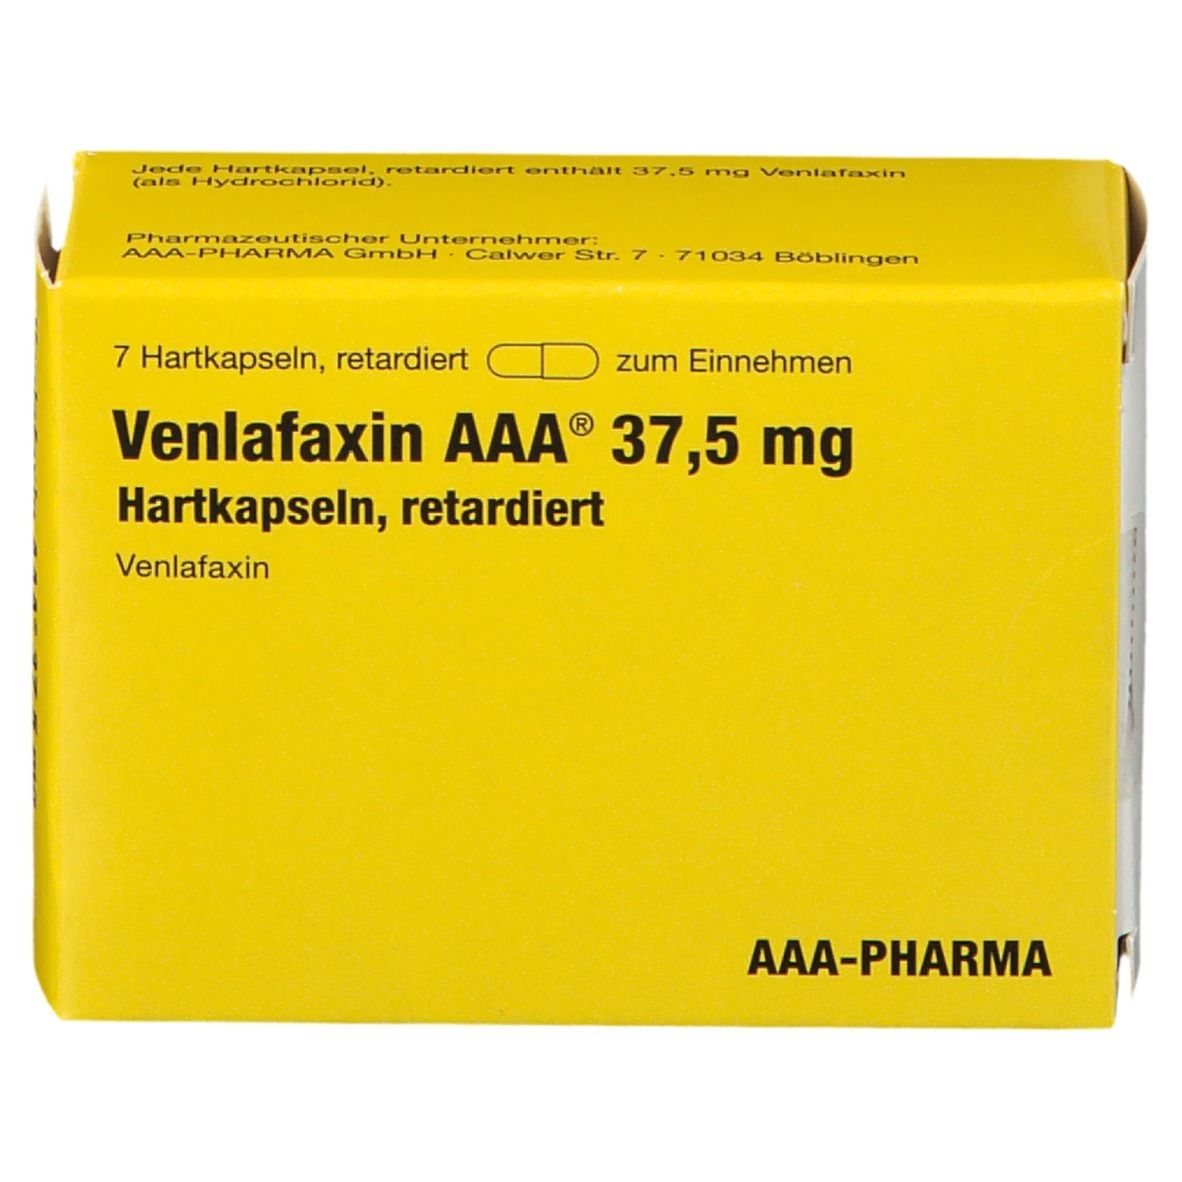 Venlafaxin AAA® 37.5Mg 